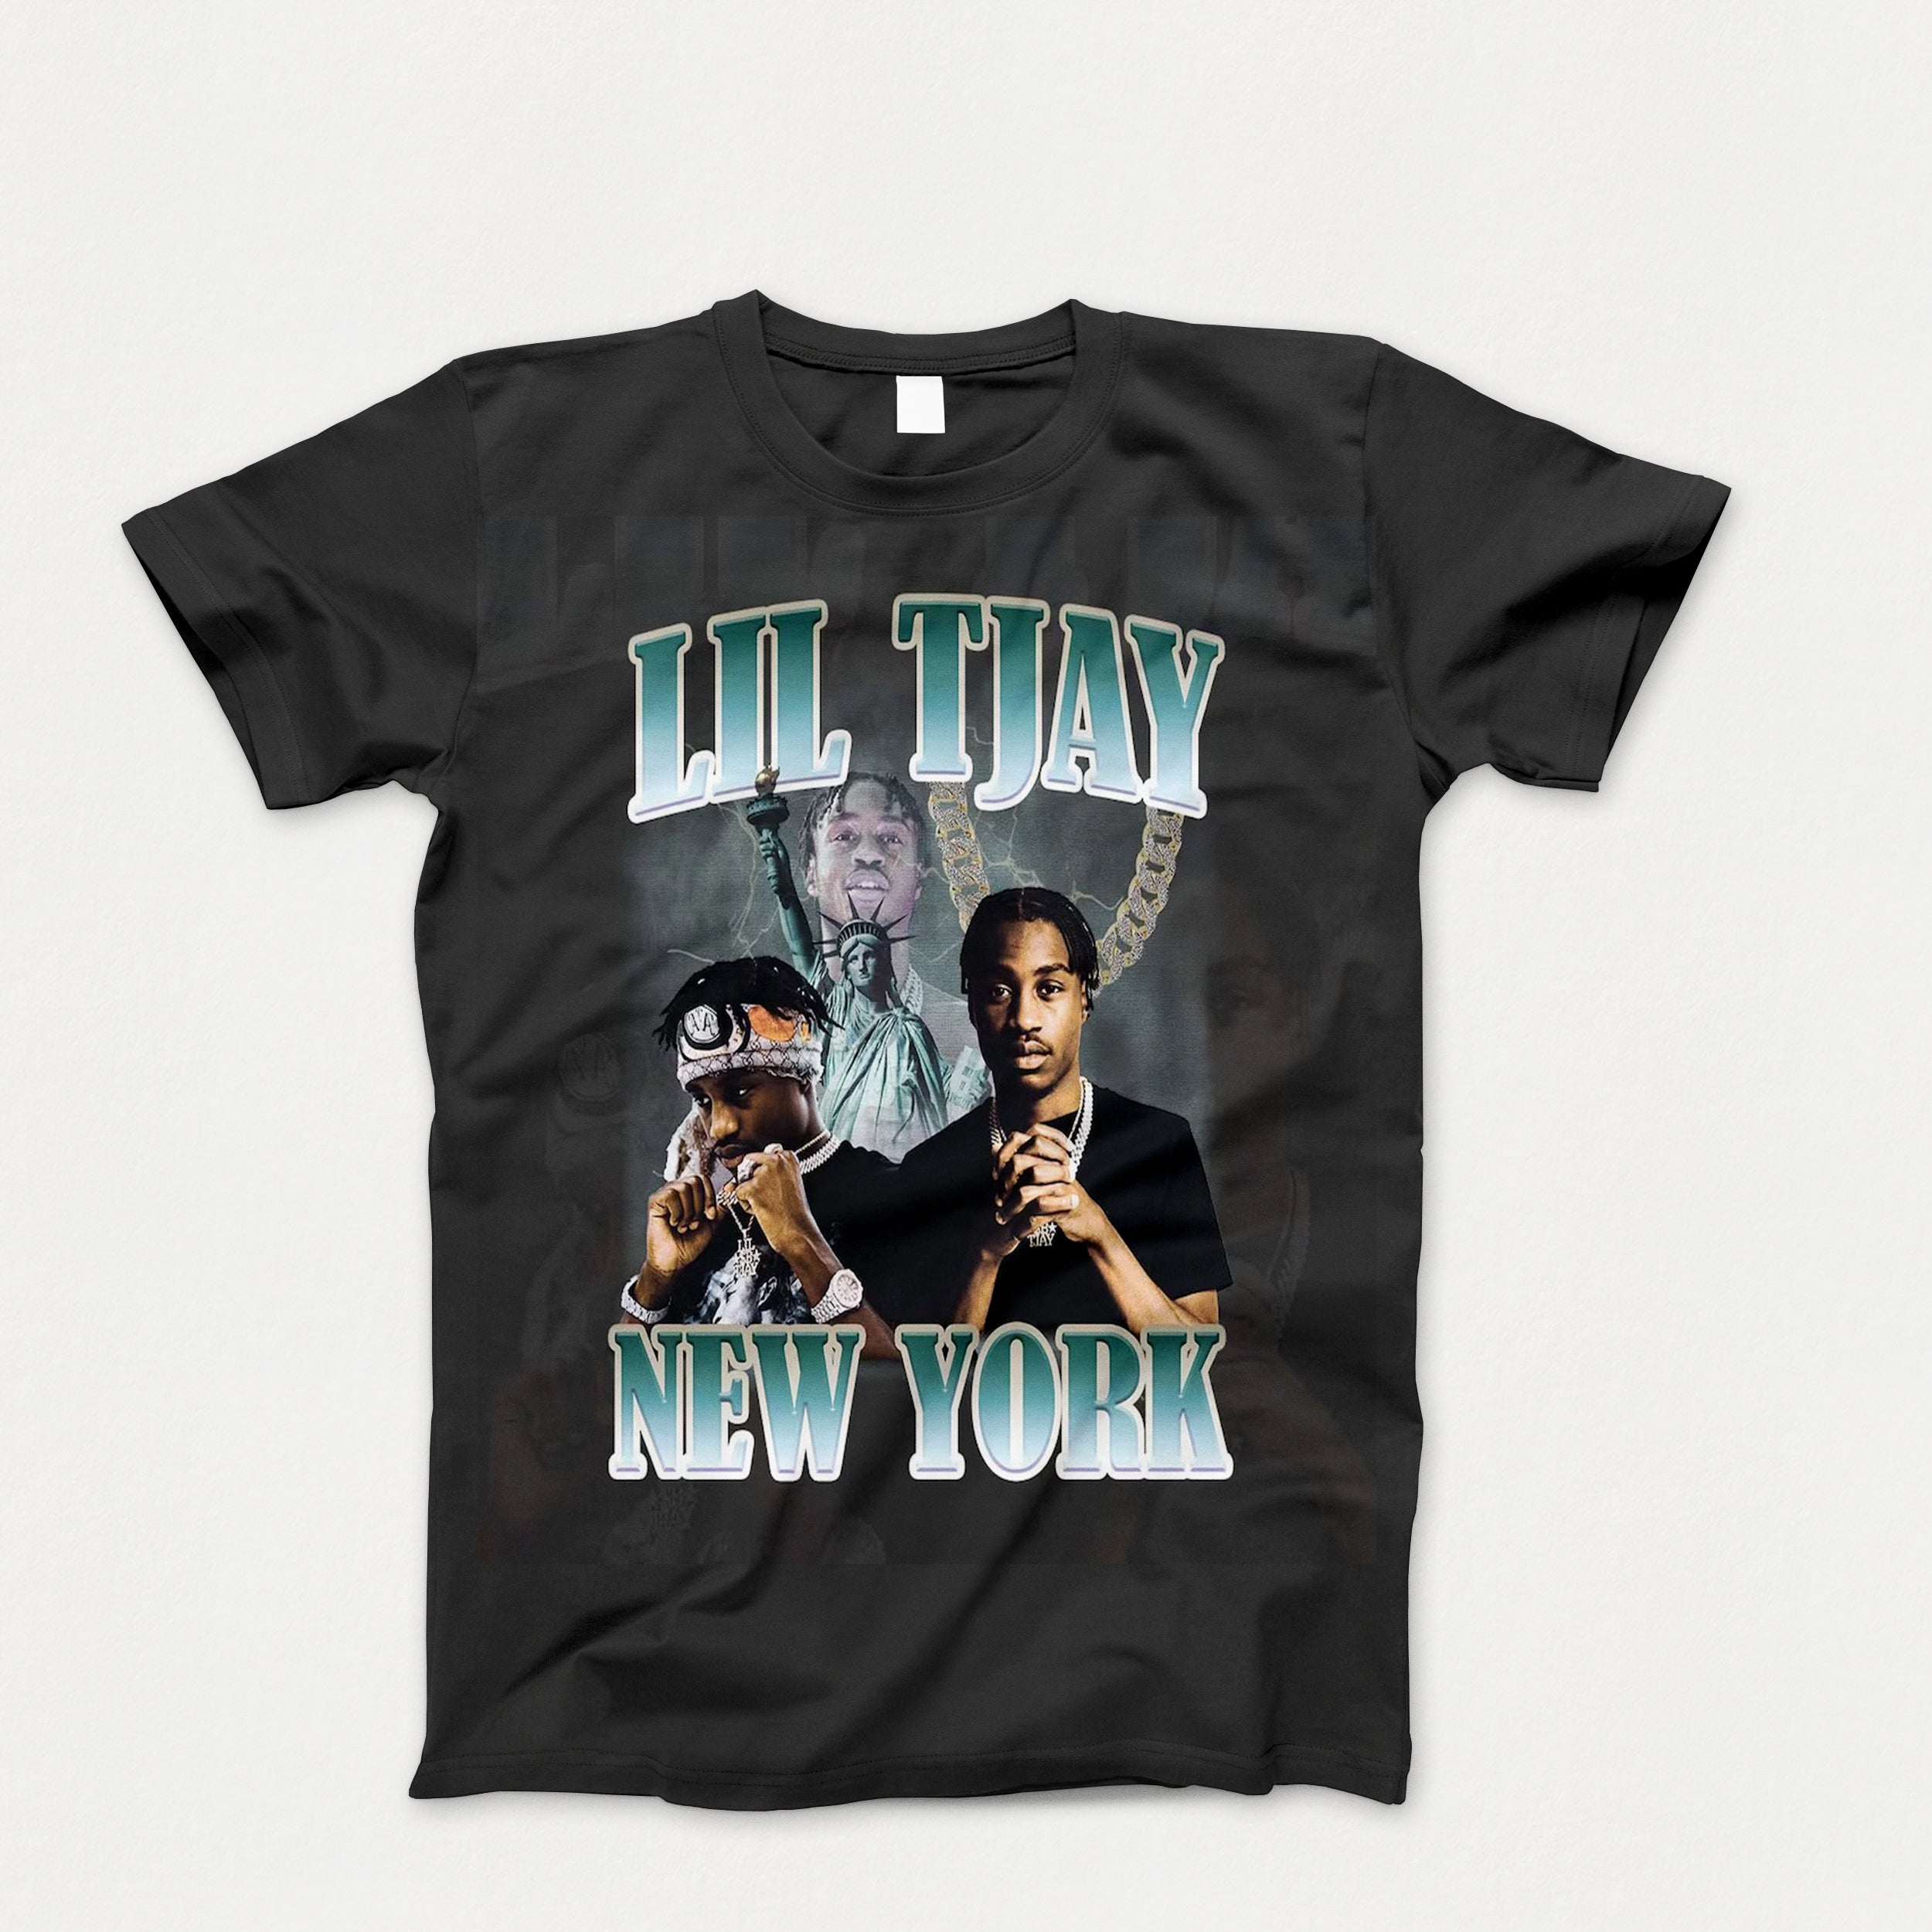 Kids Lil Tjay New York Tee Shirt